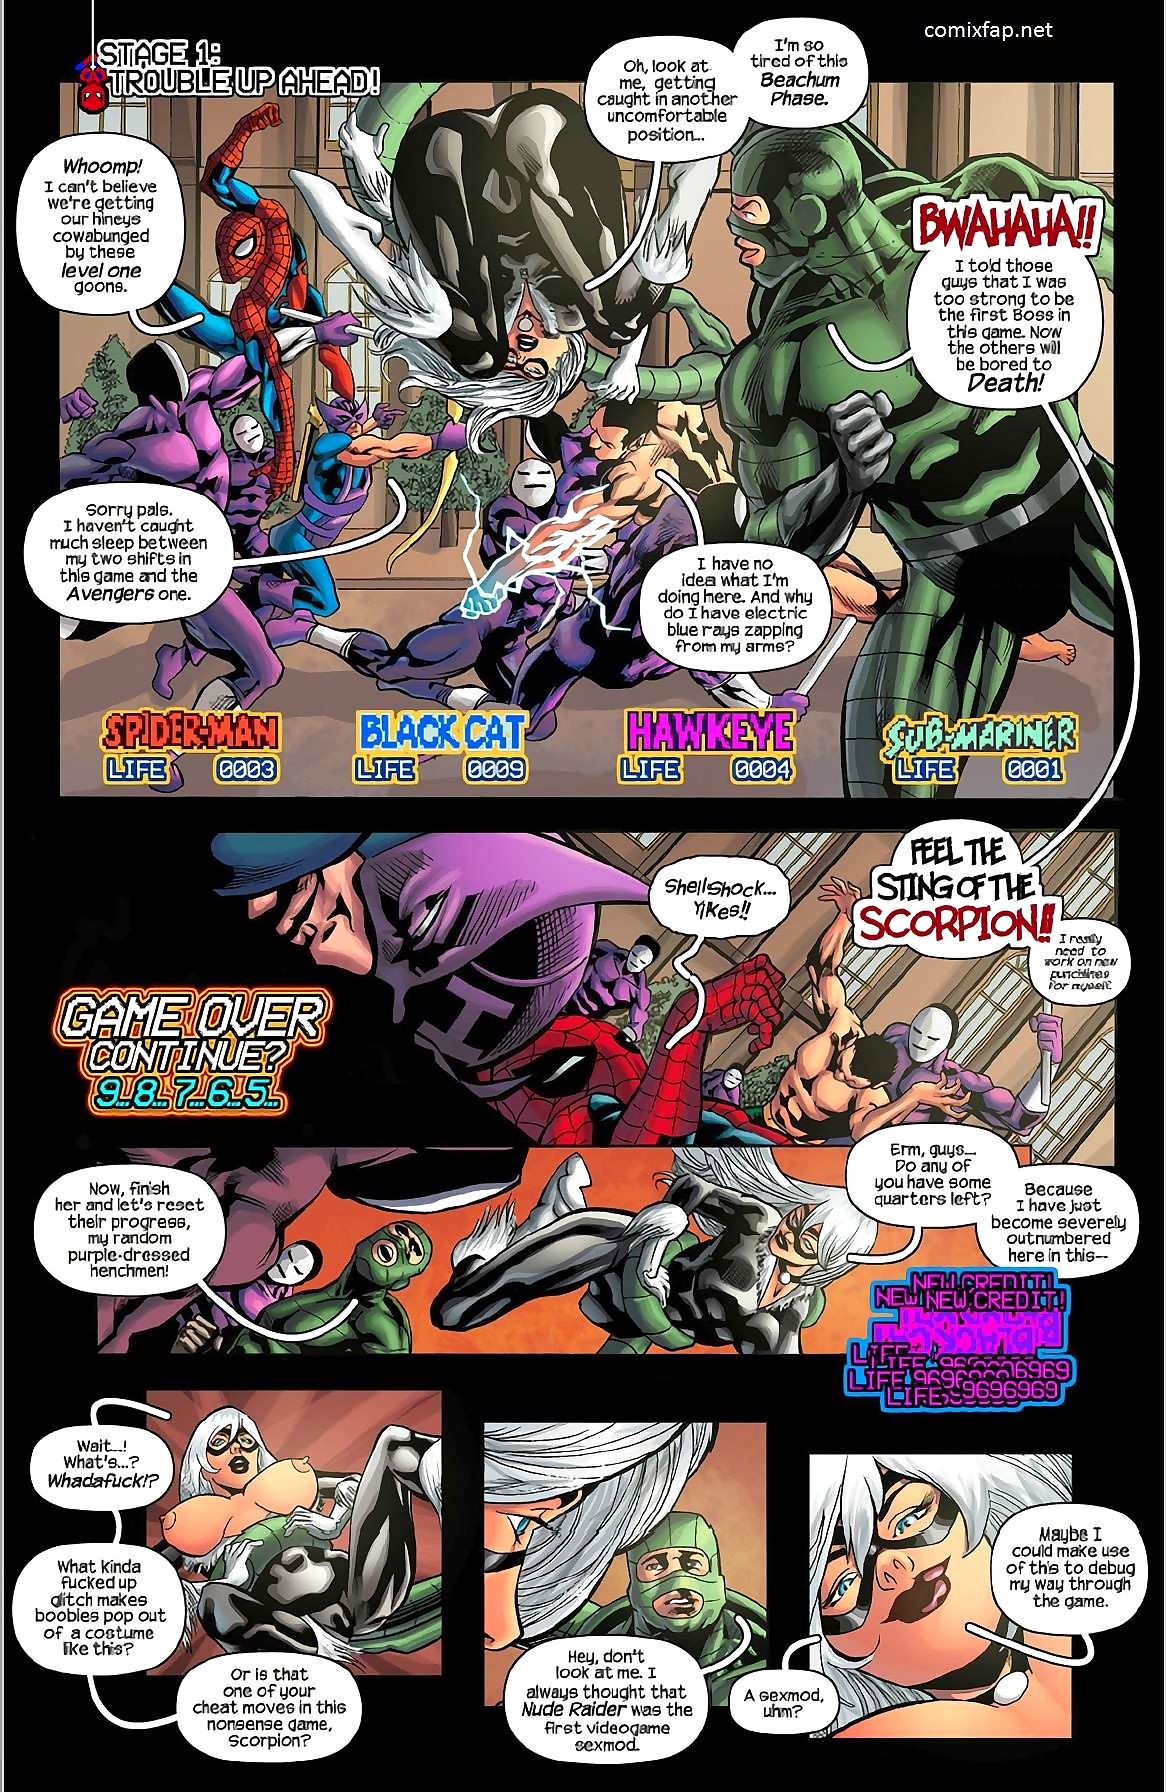 Tracy szufelki spiderman, w ’91 arcade Gra page 1